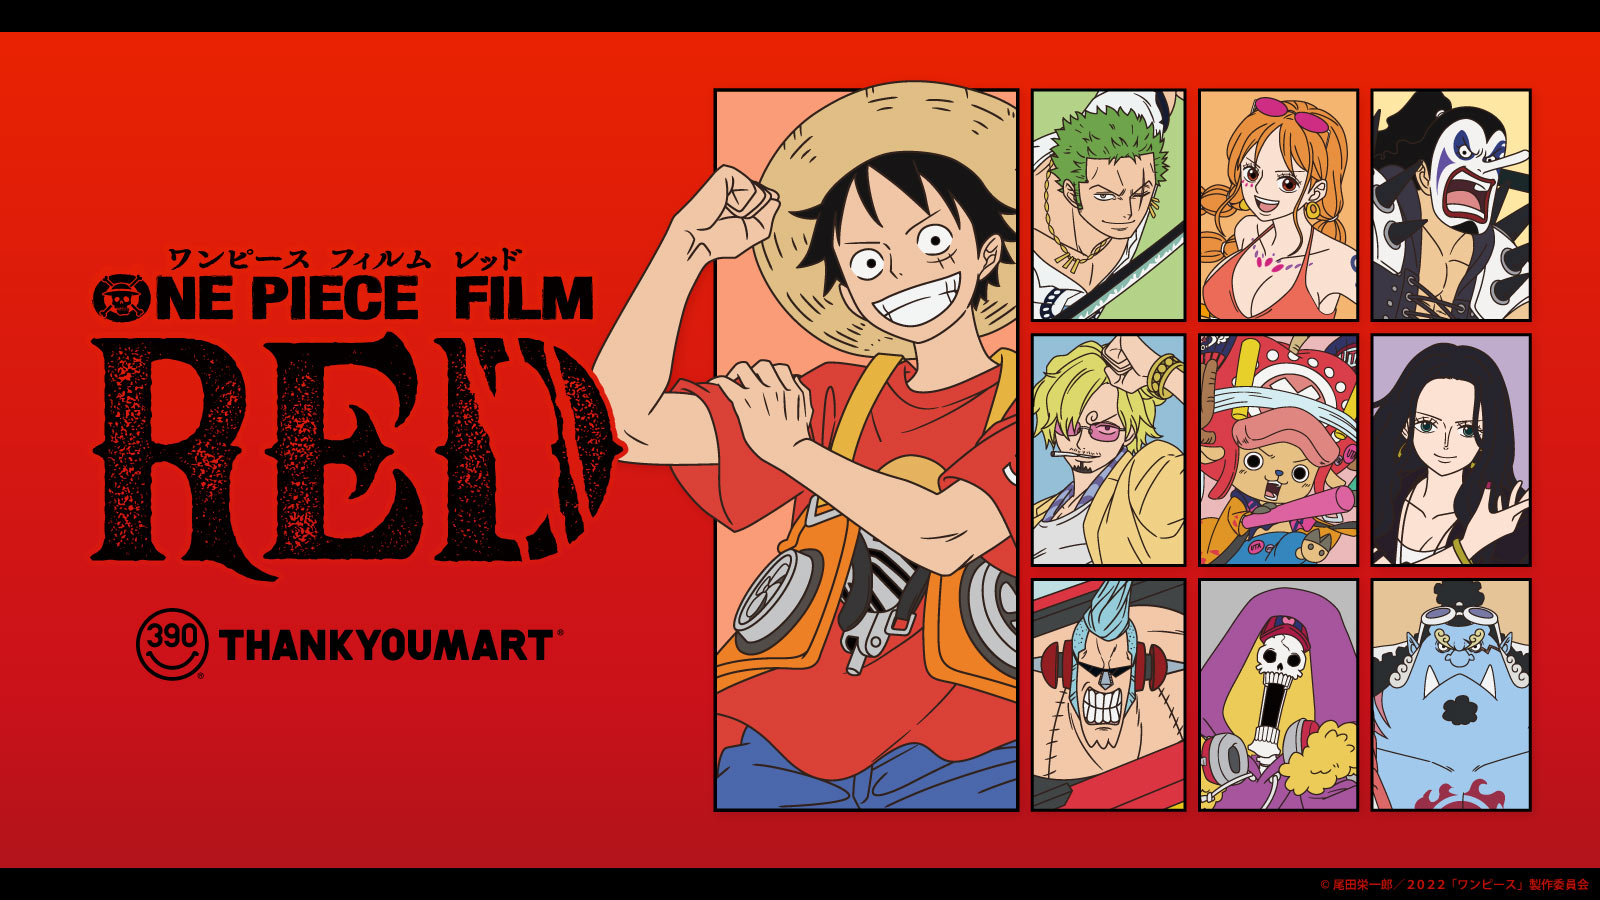 8 6公開の映画 One Piece Film Red のコラボアイテムがサンキューマートから新発売 ムビチケ前売券とコラボアイテムが当たるキャンペーンも開催 エルソニック株式会社のプレスリリース